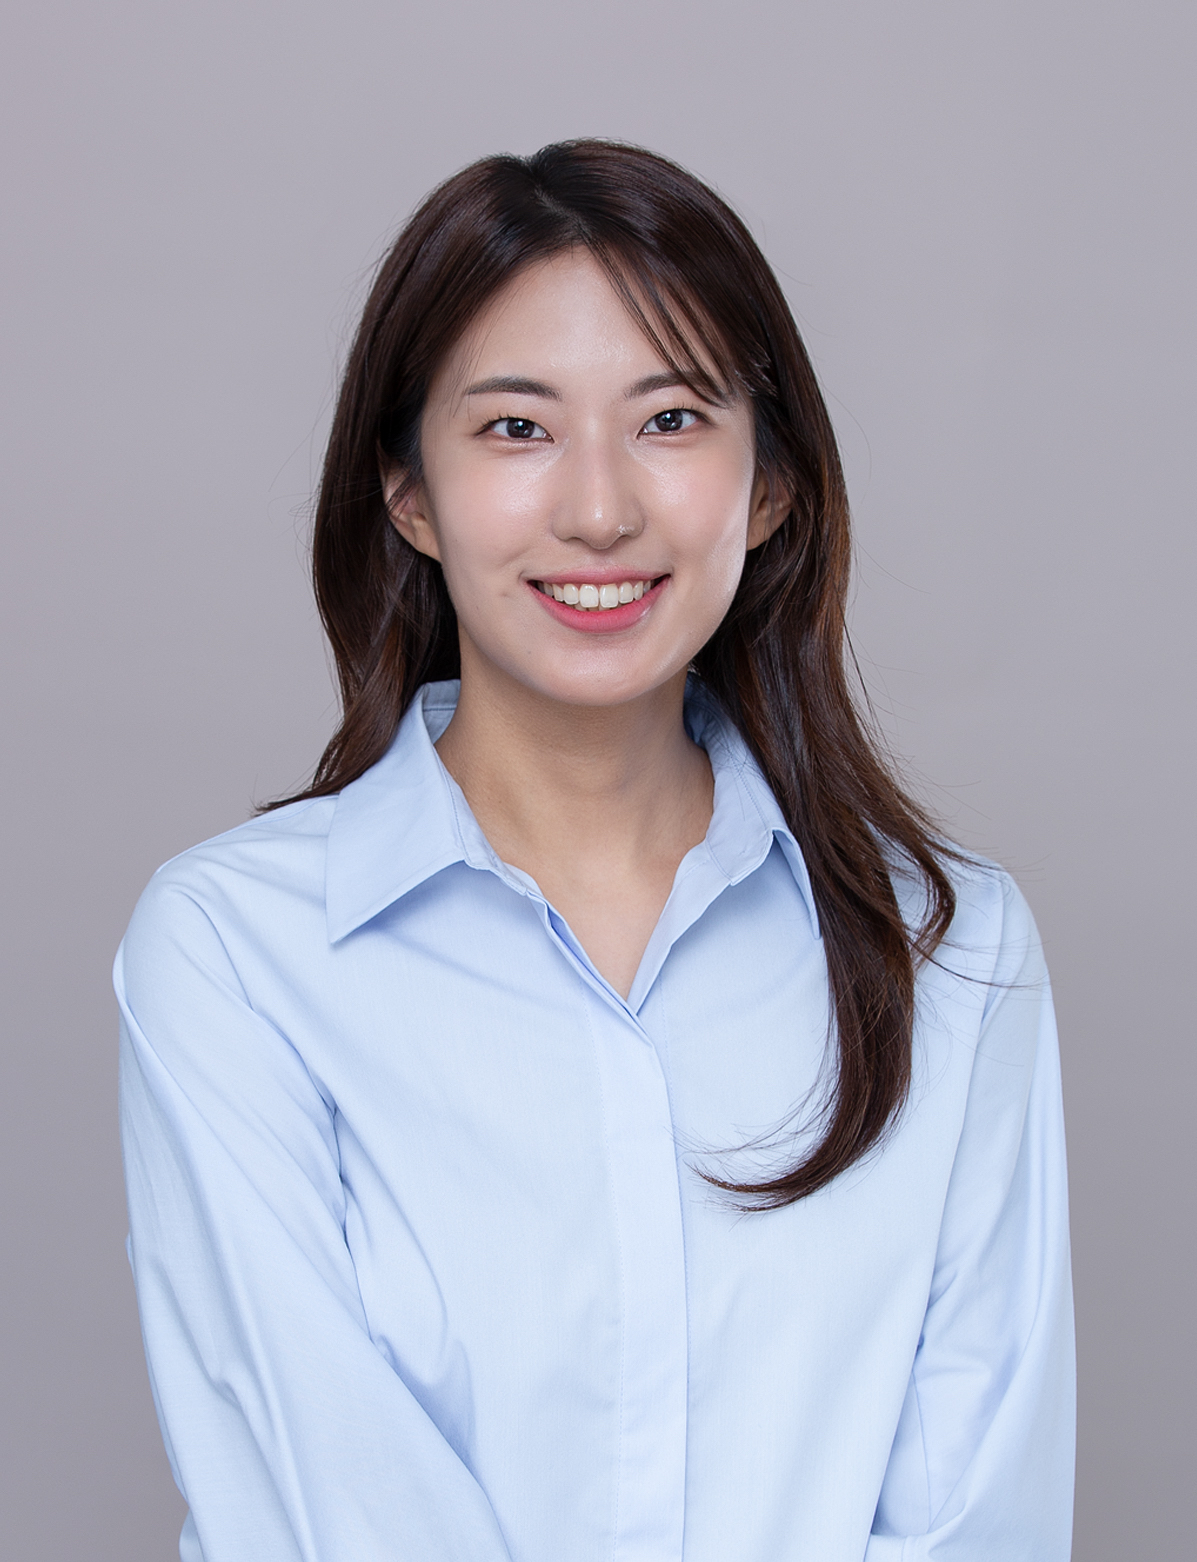 Ha Eun Choi